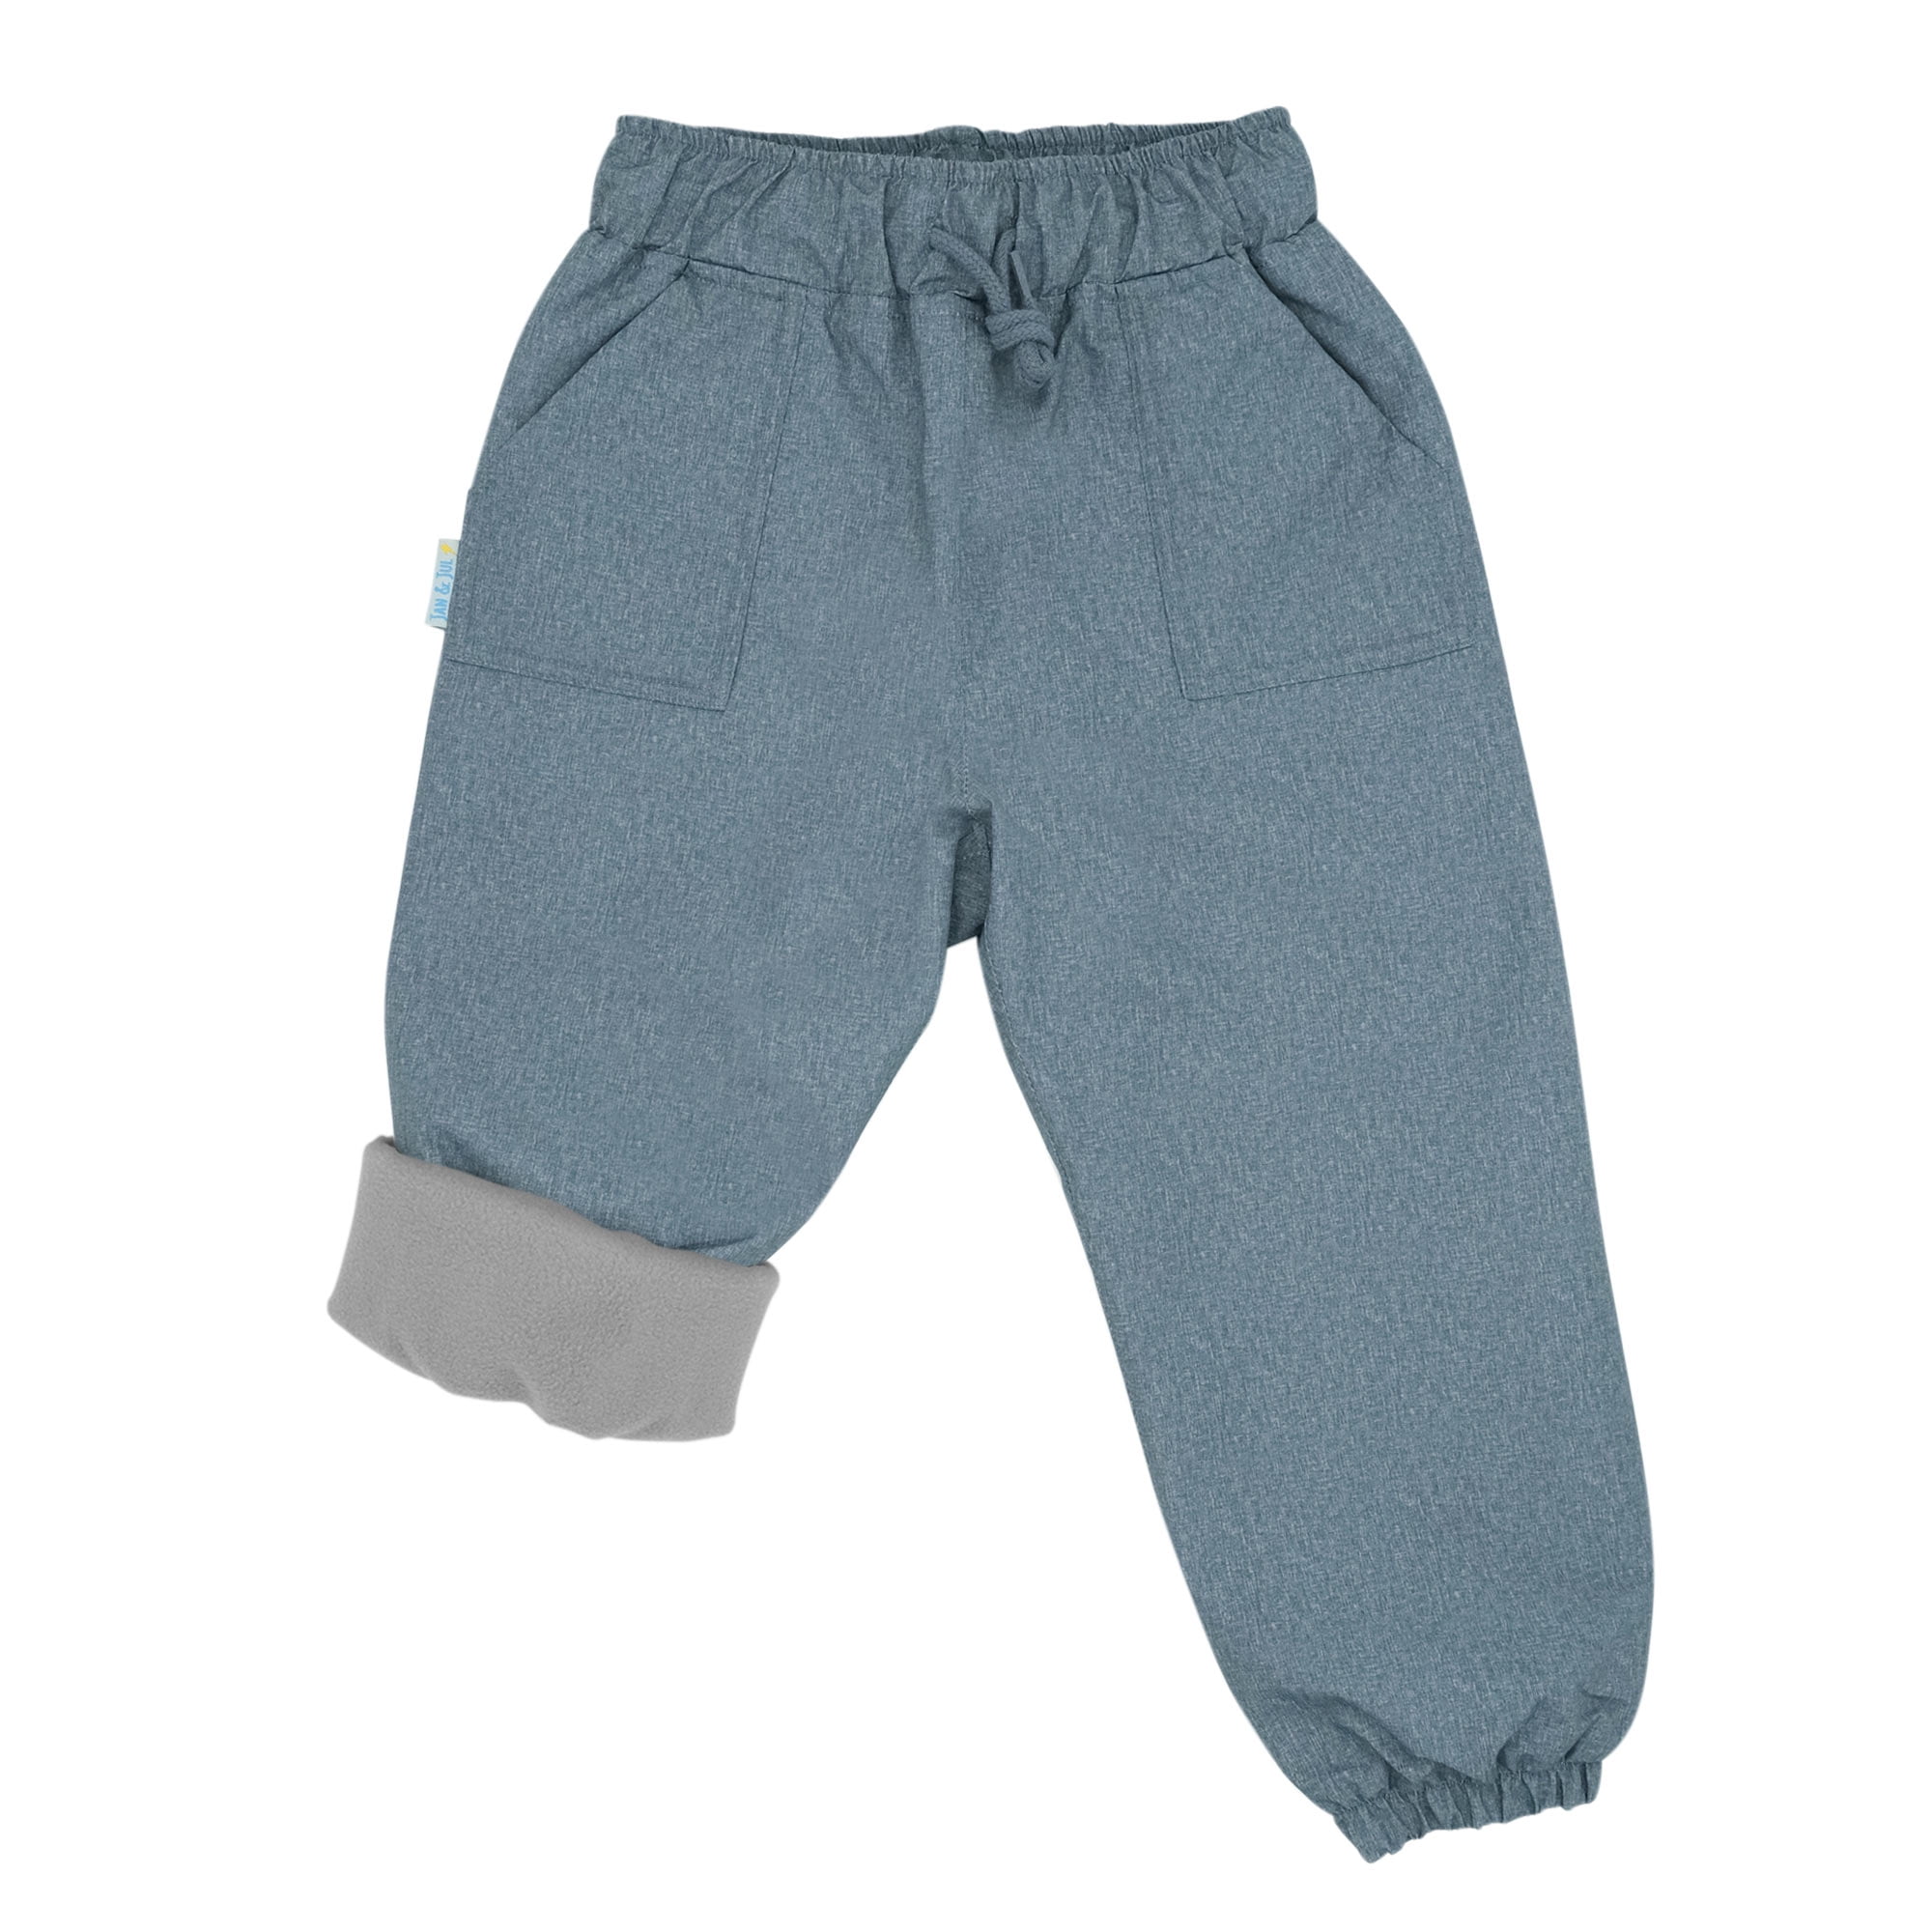 Playshoes Unisex Baby and Kids' Fleece Lined Rain Pants